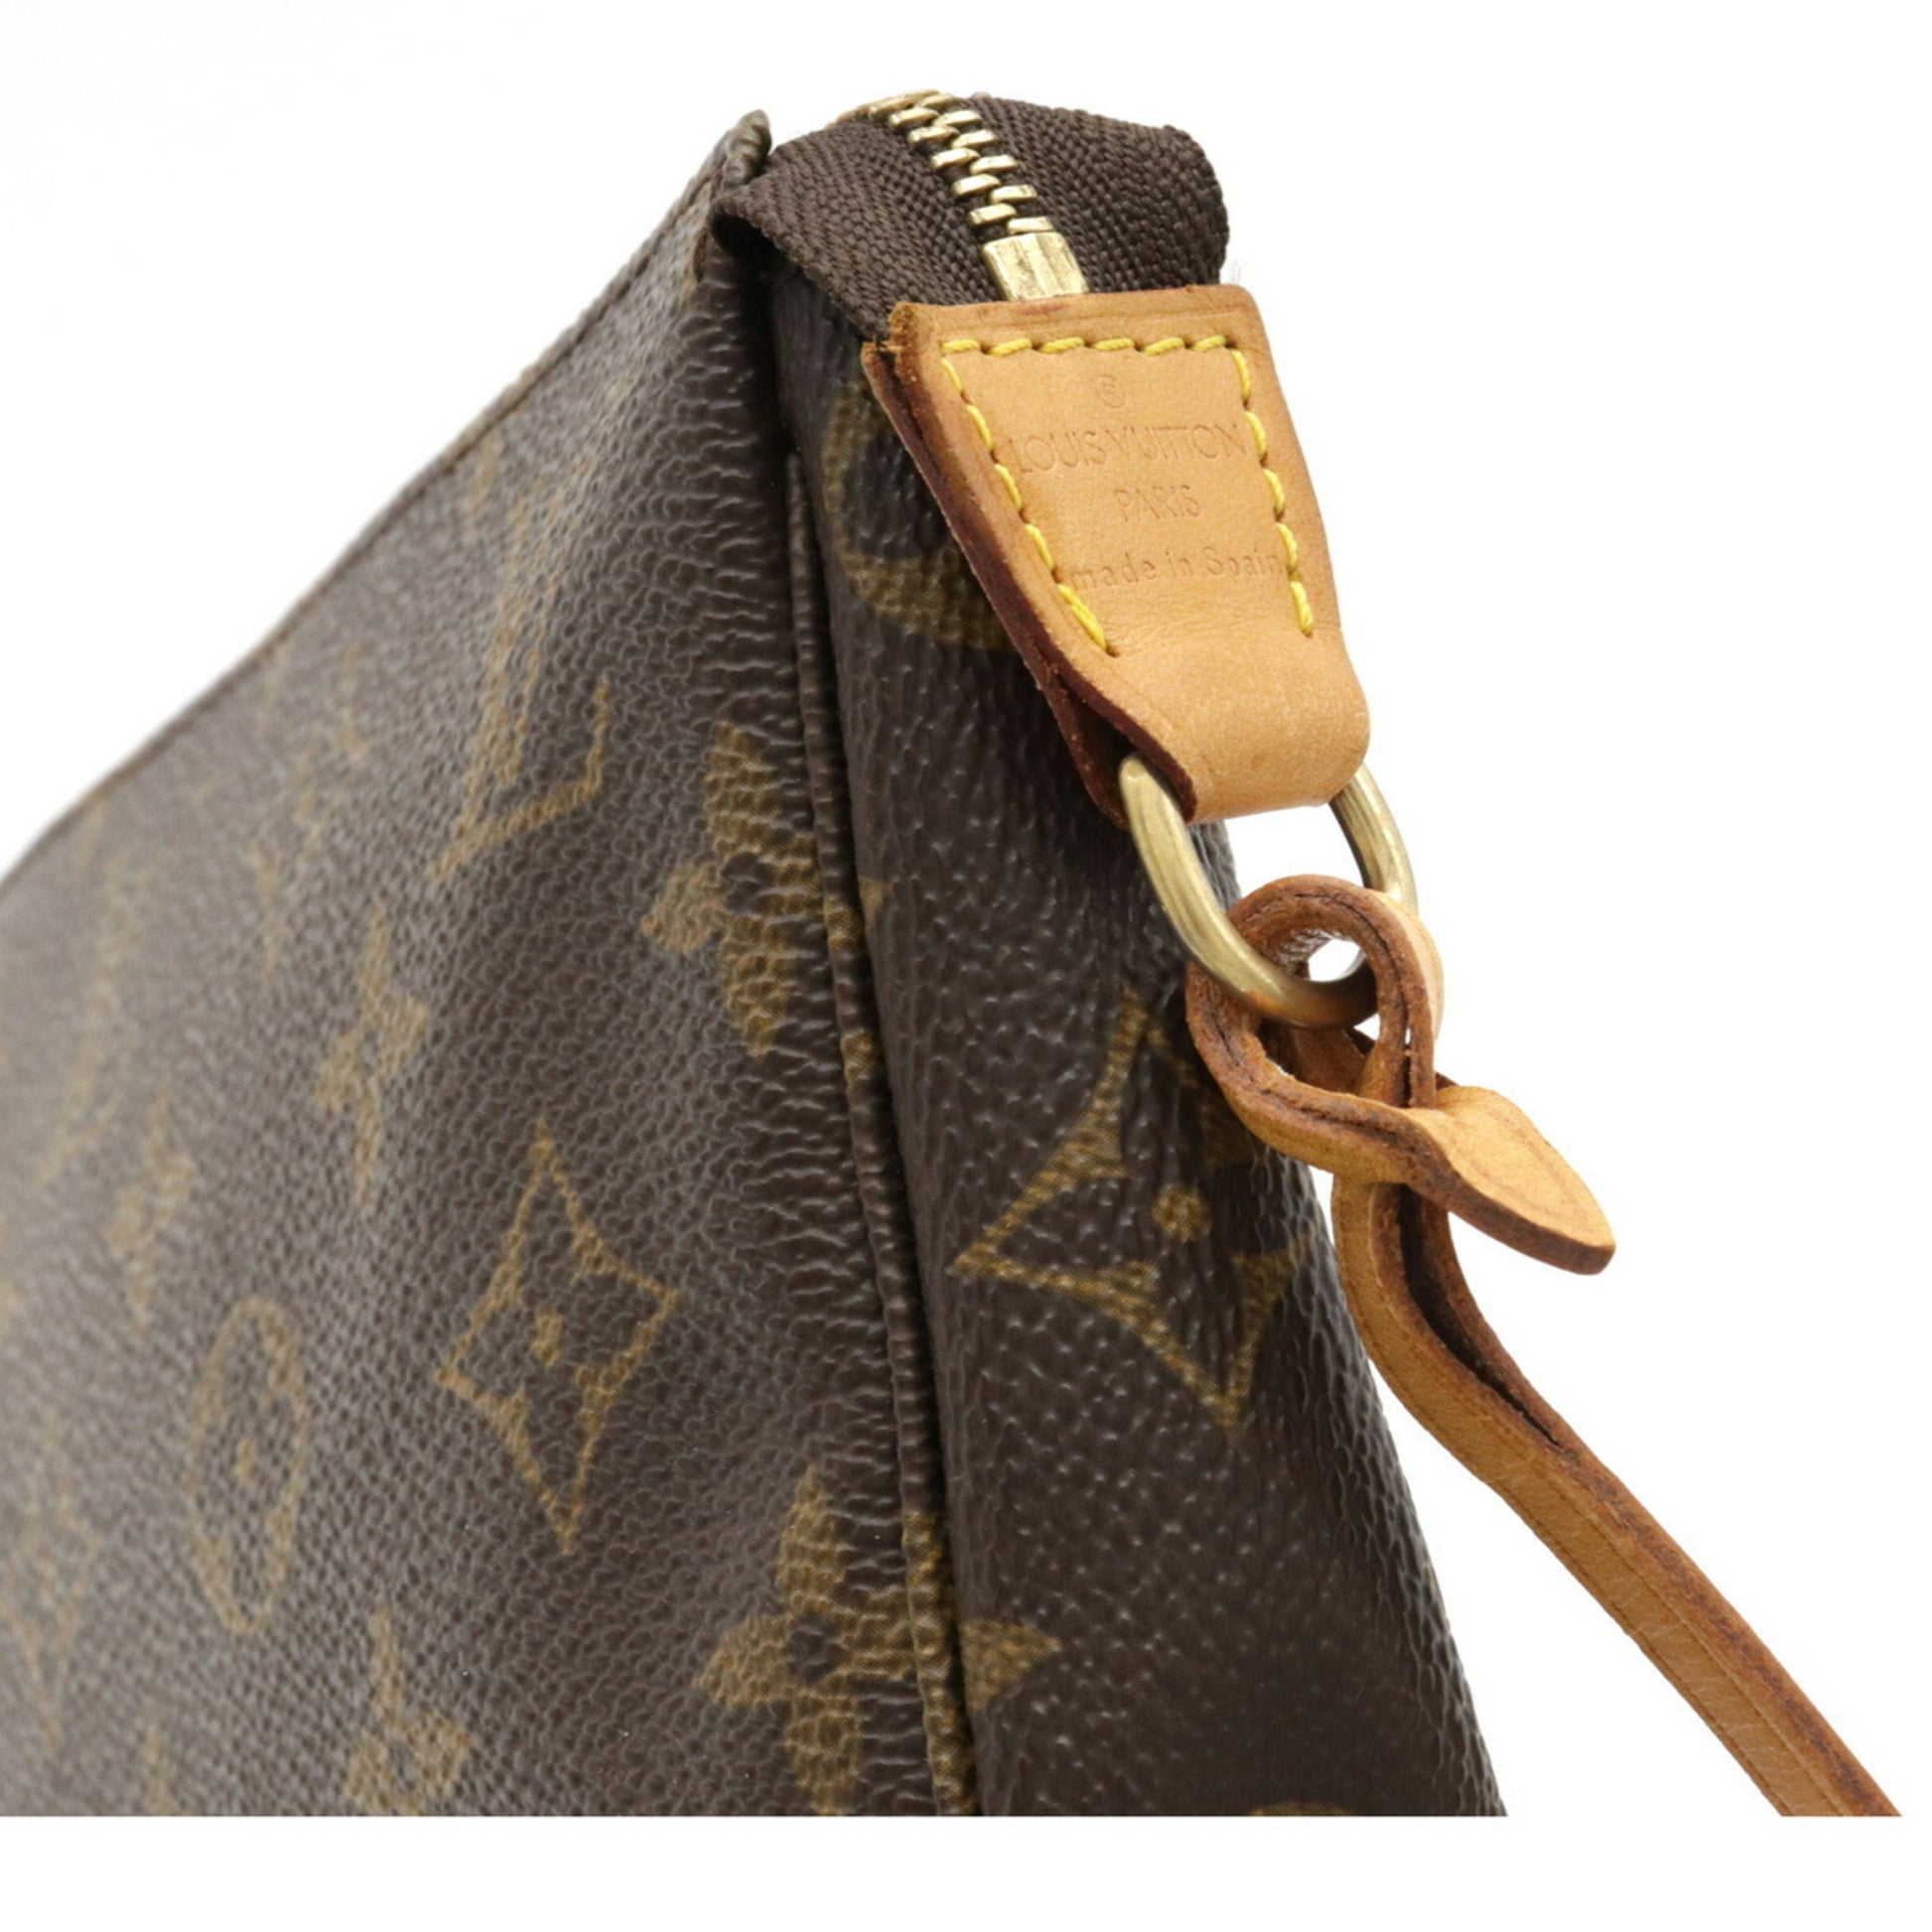 Louis Vuitton M40712 MONOGRAM POCHETTE ACCESSOIRES Shoulder Clutch Bag BNIB